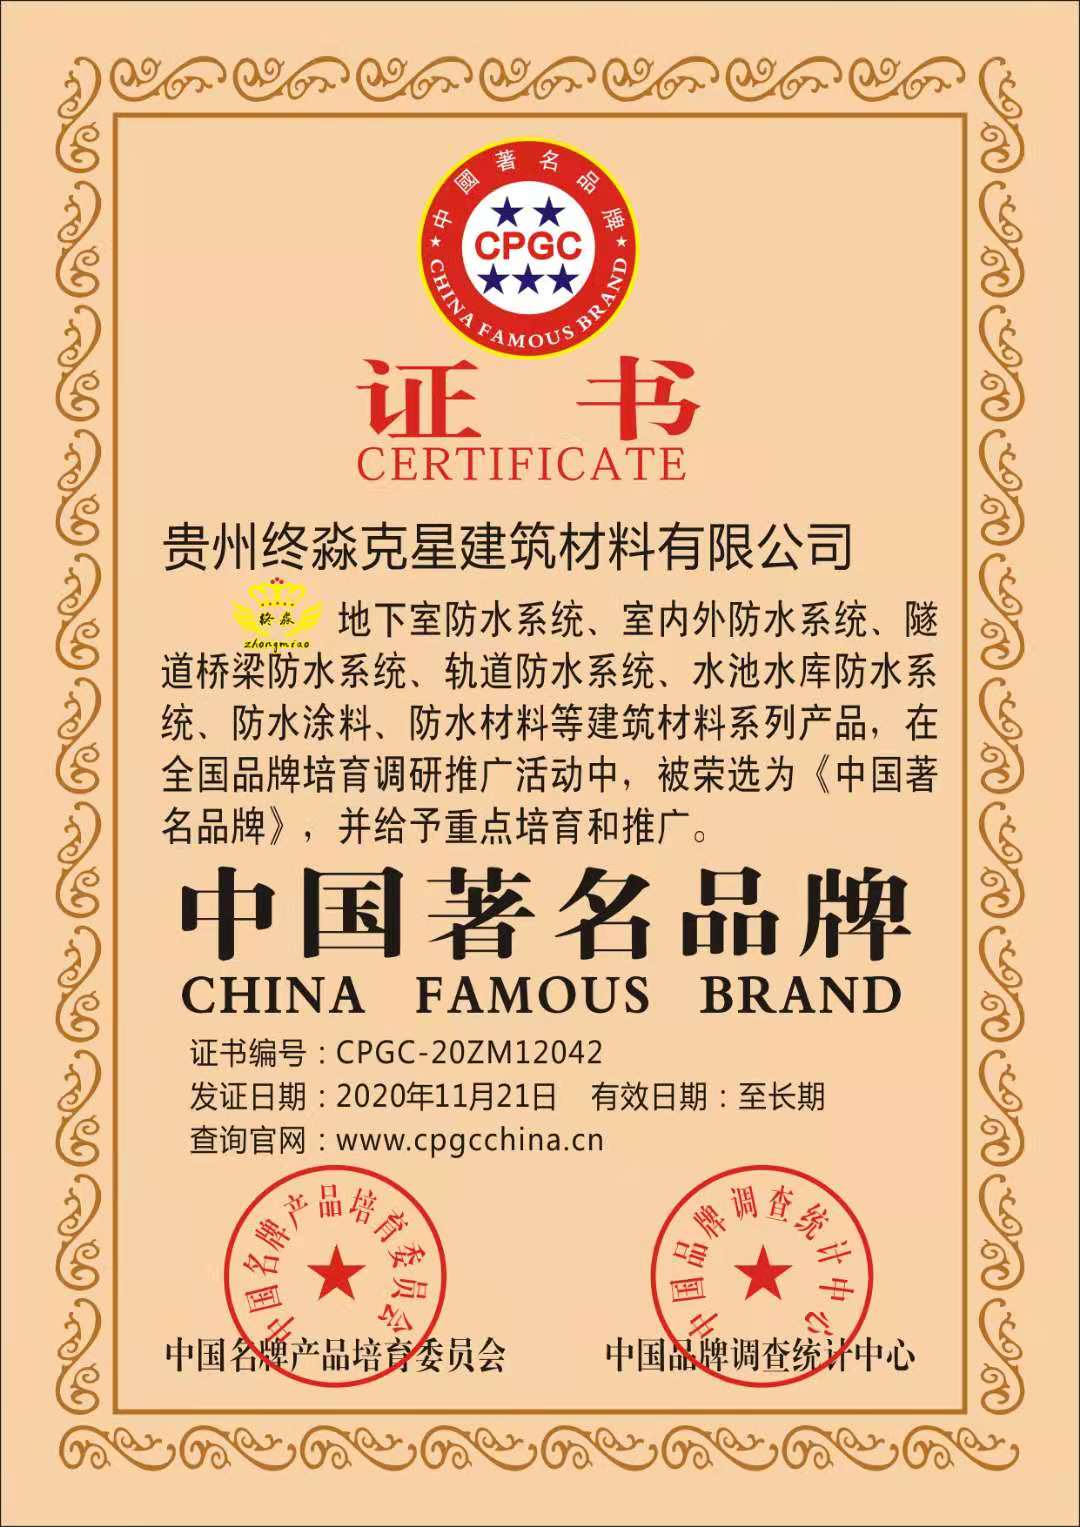 《中国著名品牌》证书